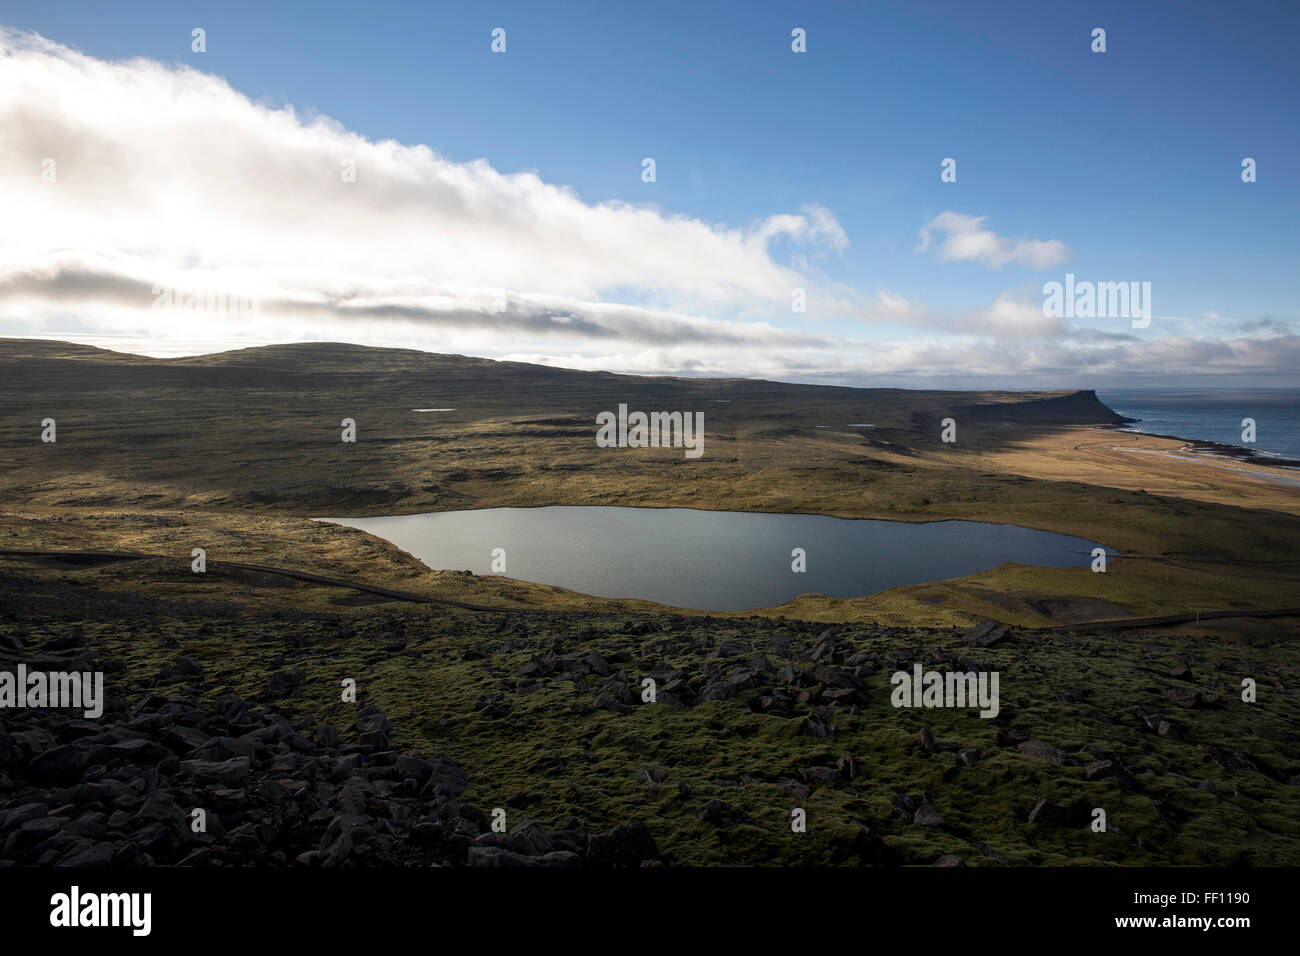 Lake in remote landscape Stock Photo